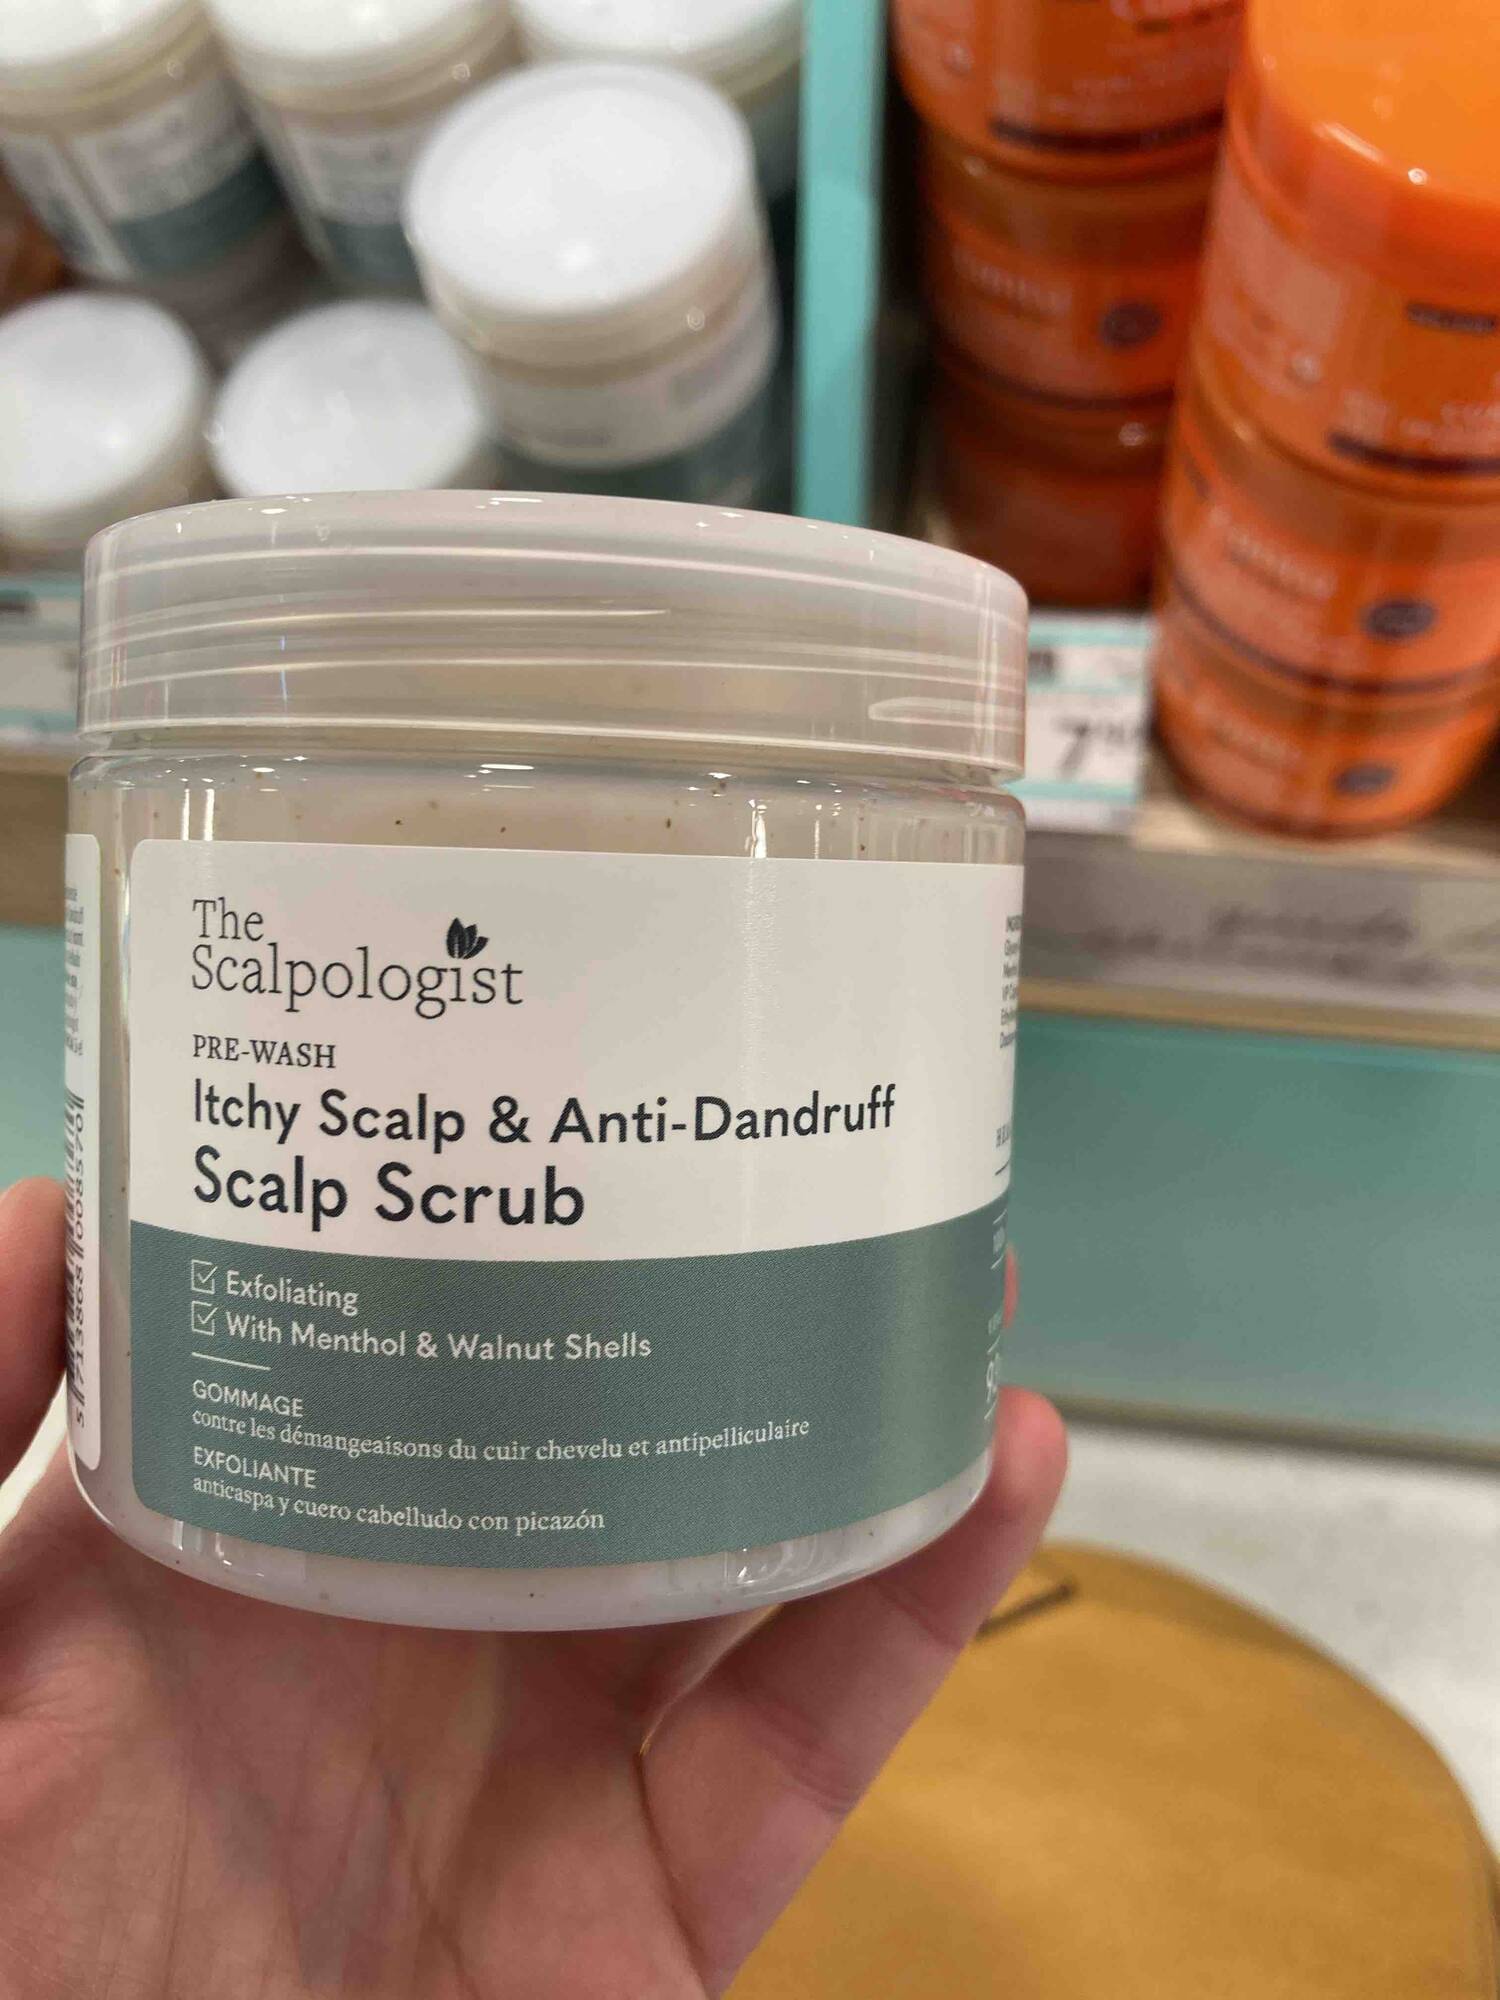 THE SCALPOLOGIST - Itch scalp & anti-dandruff - Scalp scrub